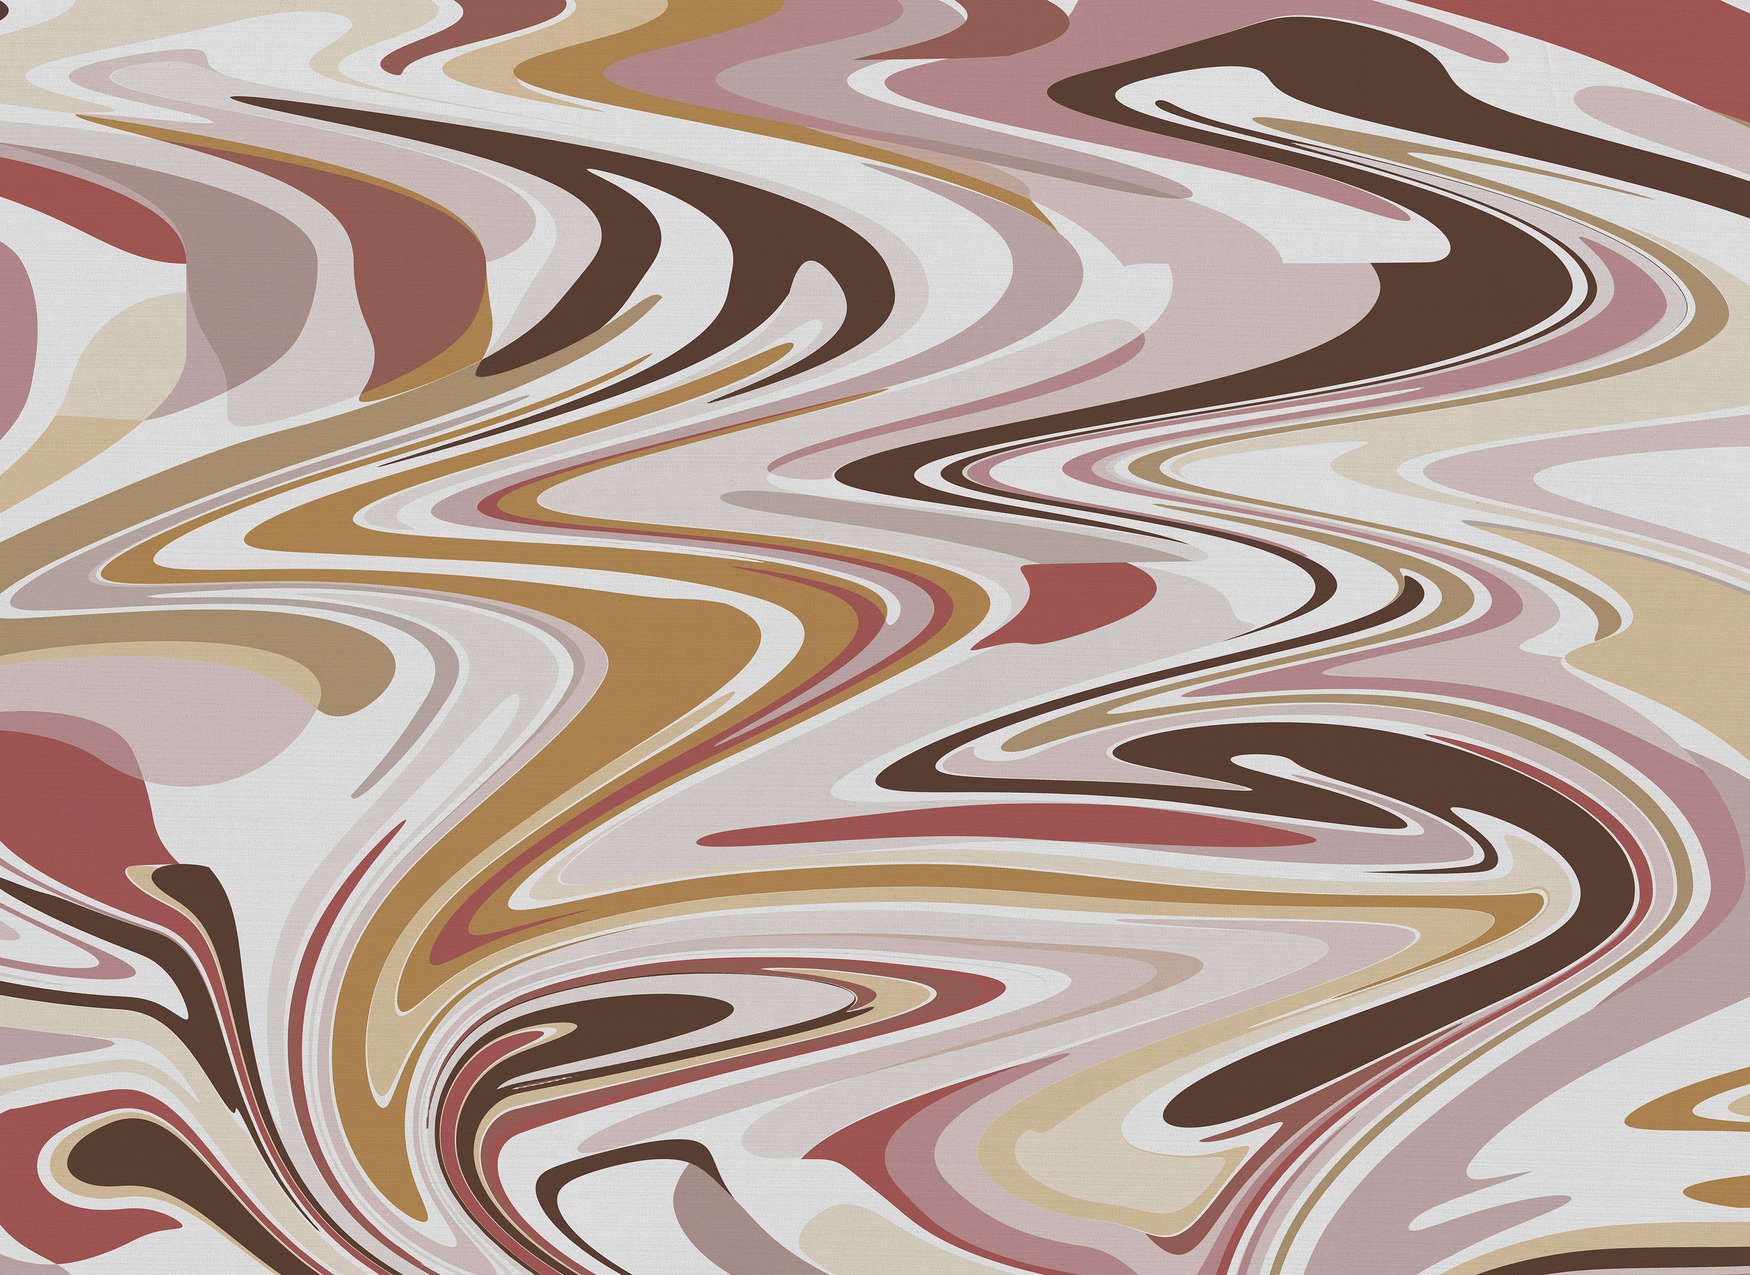             Digital behang met abstract kleurenpatroon in warme tinten - roze, beige, rood
        